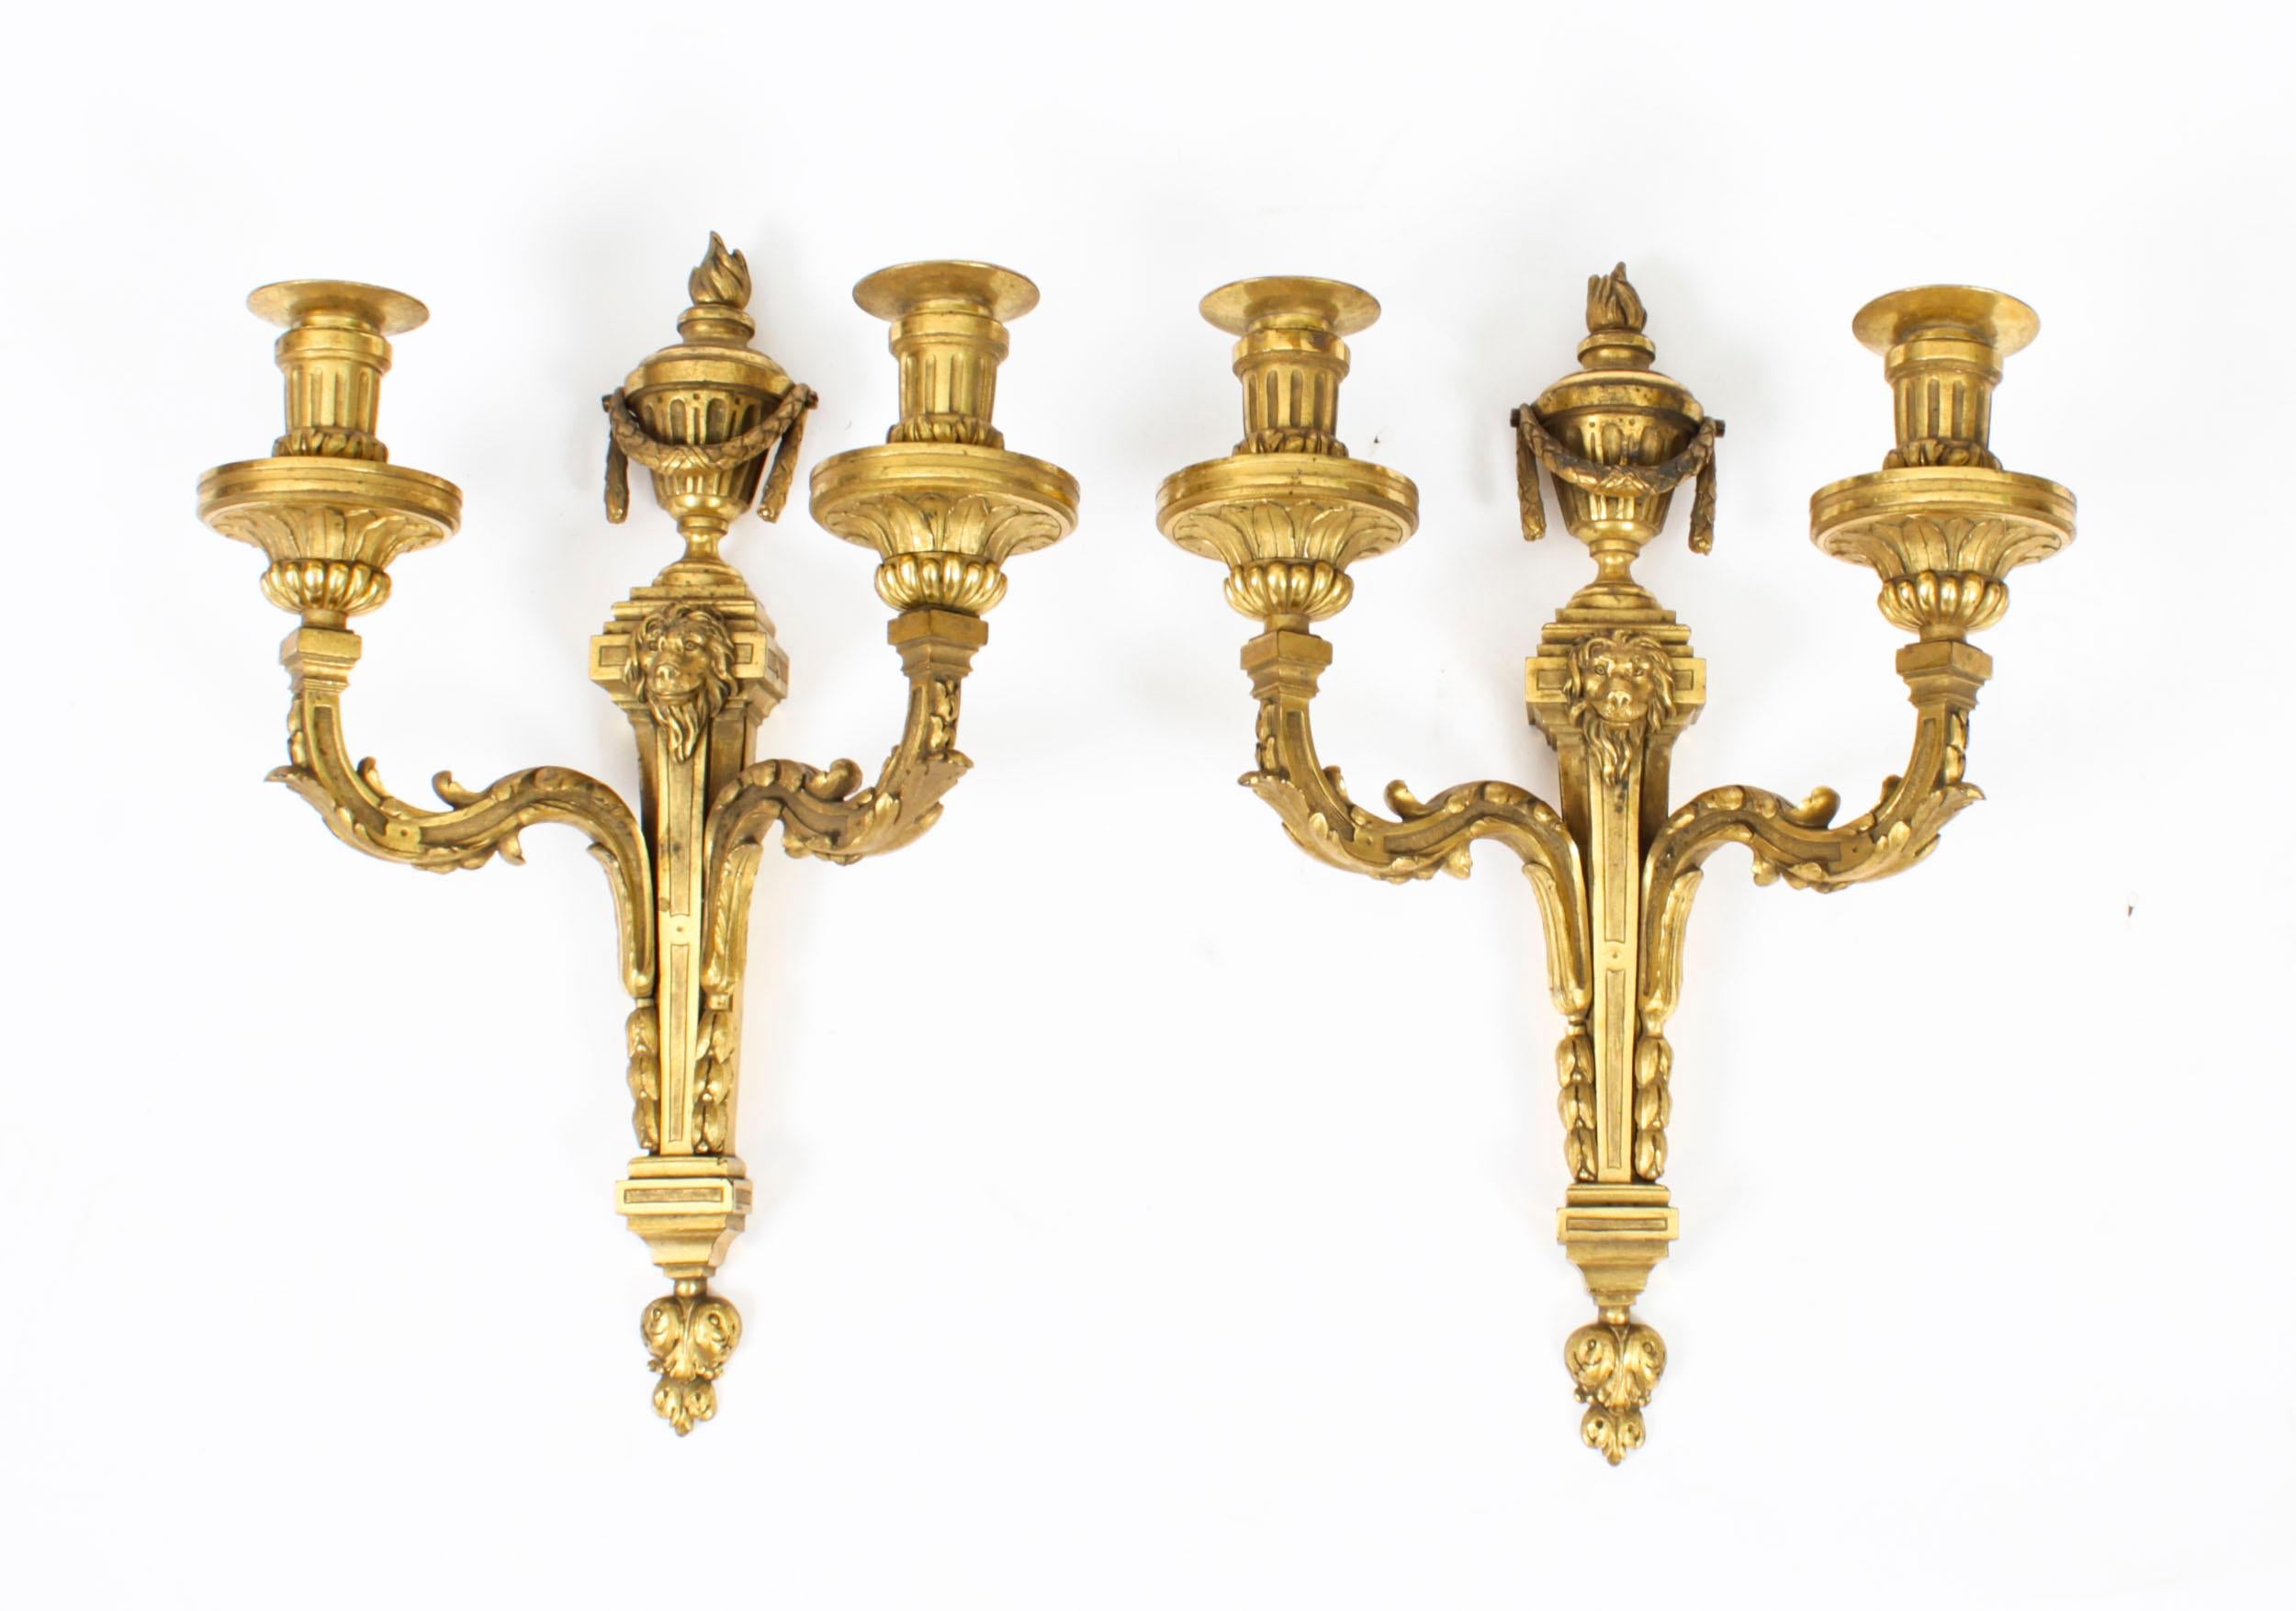 Dies ist ein feines Paar von antiken Regency Revival Twin Branch Ormolu Wandkerzenlampen aus CIRCA 1850.

Die Wandleuchten haben fackelurnenförmige Aufsätze über spitz zulaufenden Körpern mit Löwenmaskenfassungen, jeweils mit akanthusblattförmigen,